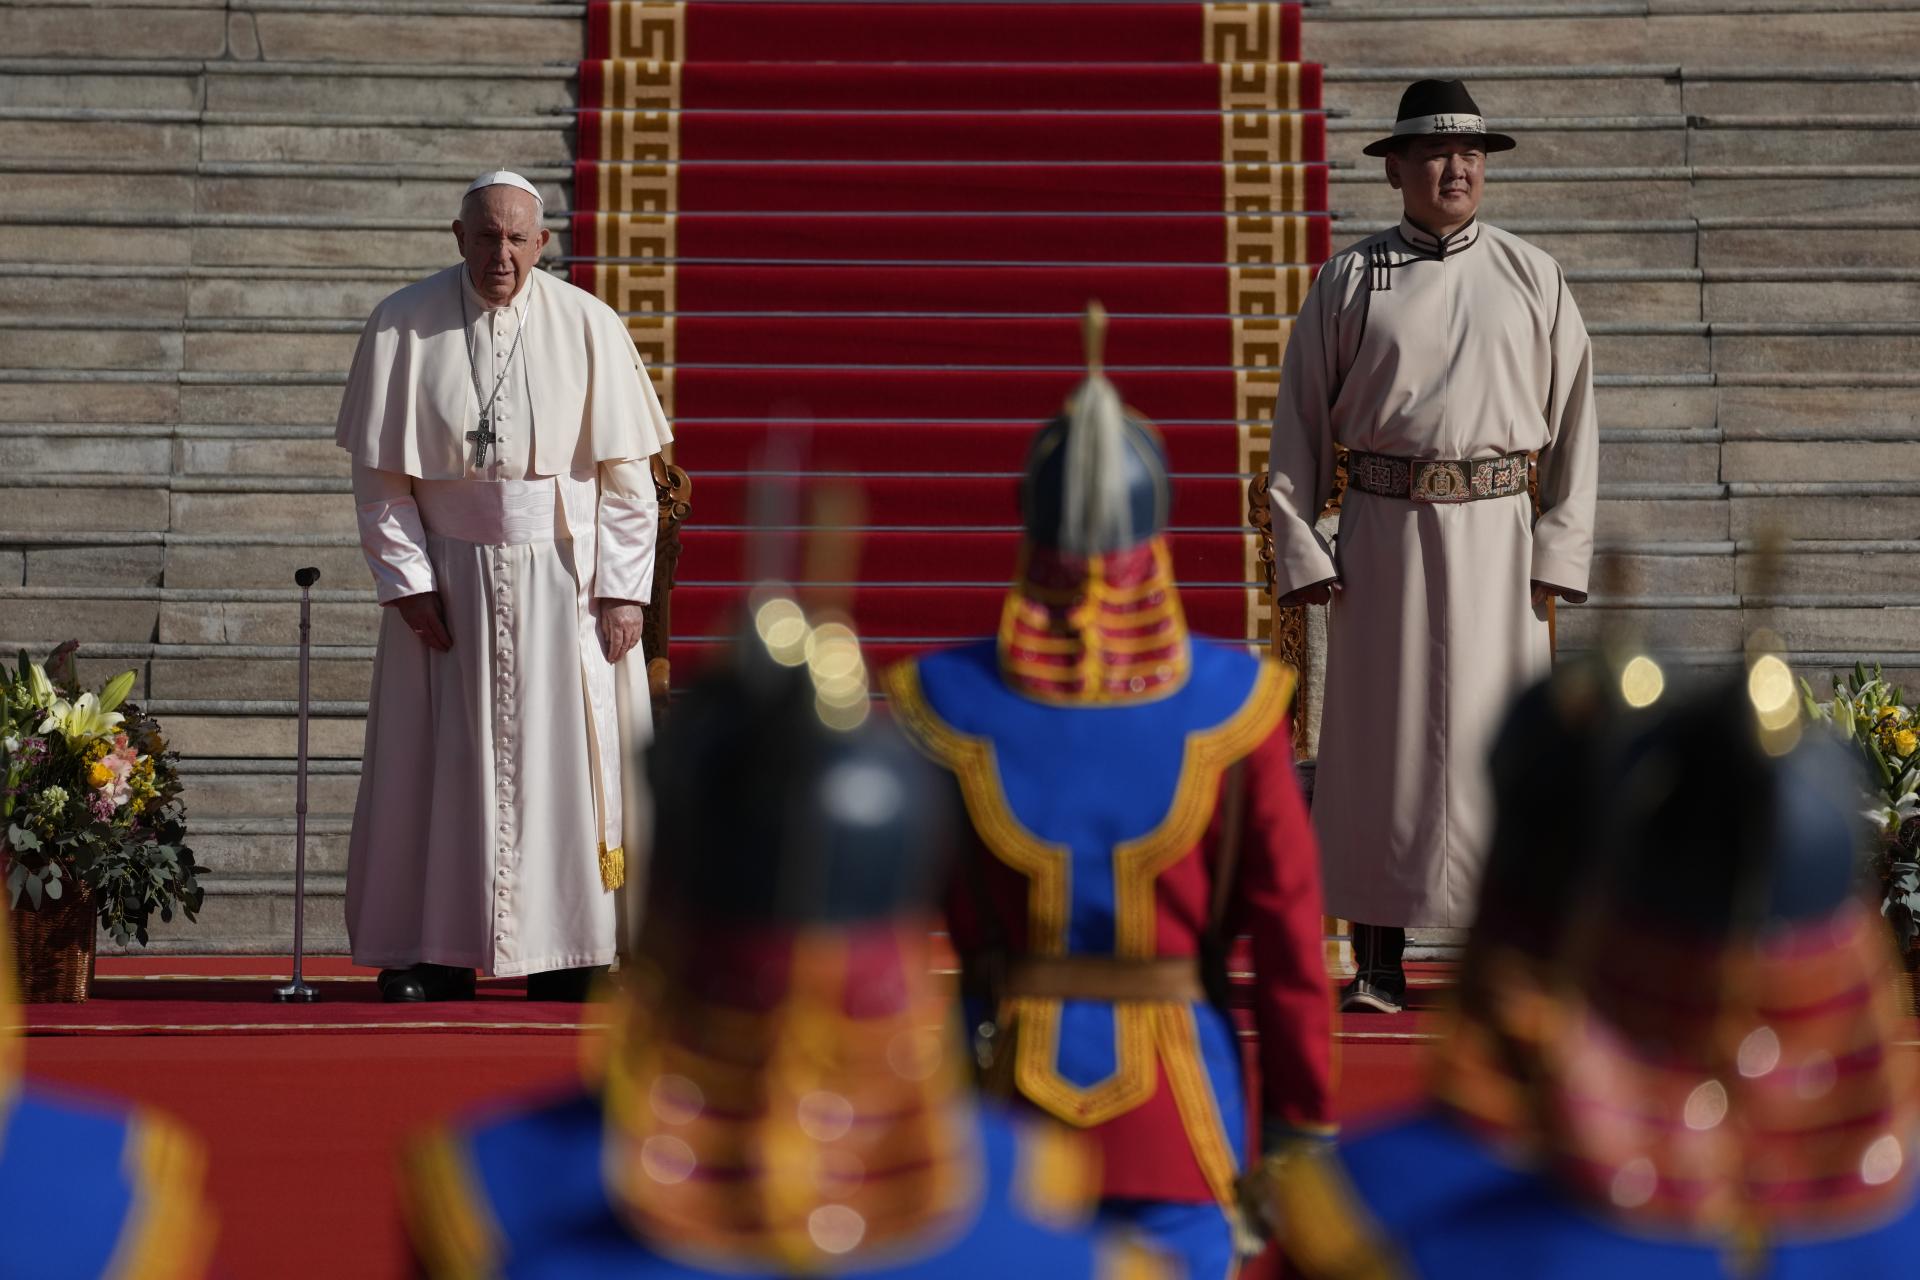 Svetské vlády a inštitúcie nemajú dôvod obávať sa katolíckej cirkvi, vyhlásil pápež